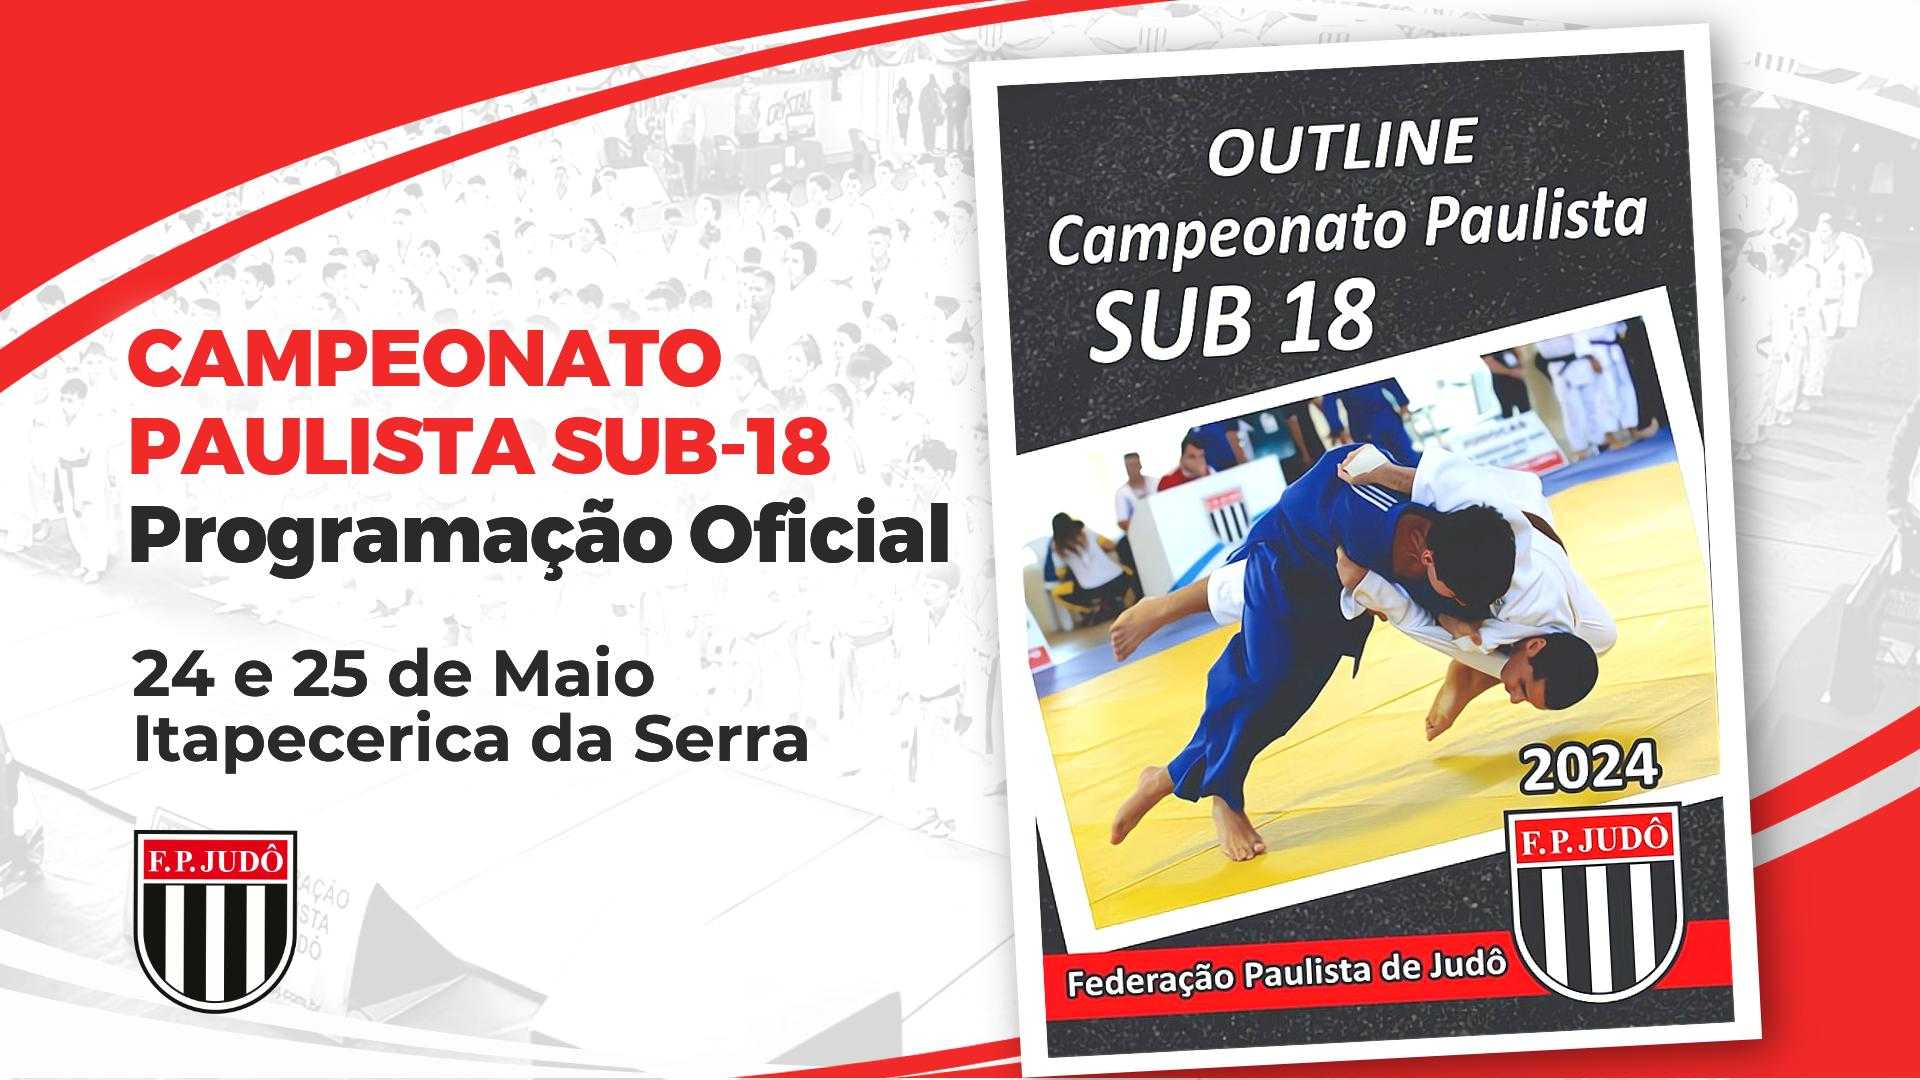 Programação Oficial - Campeonato Paulista Sub-18